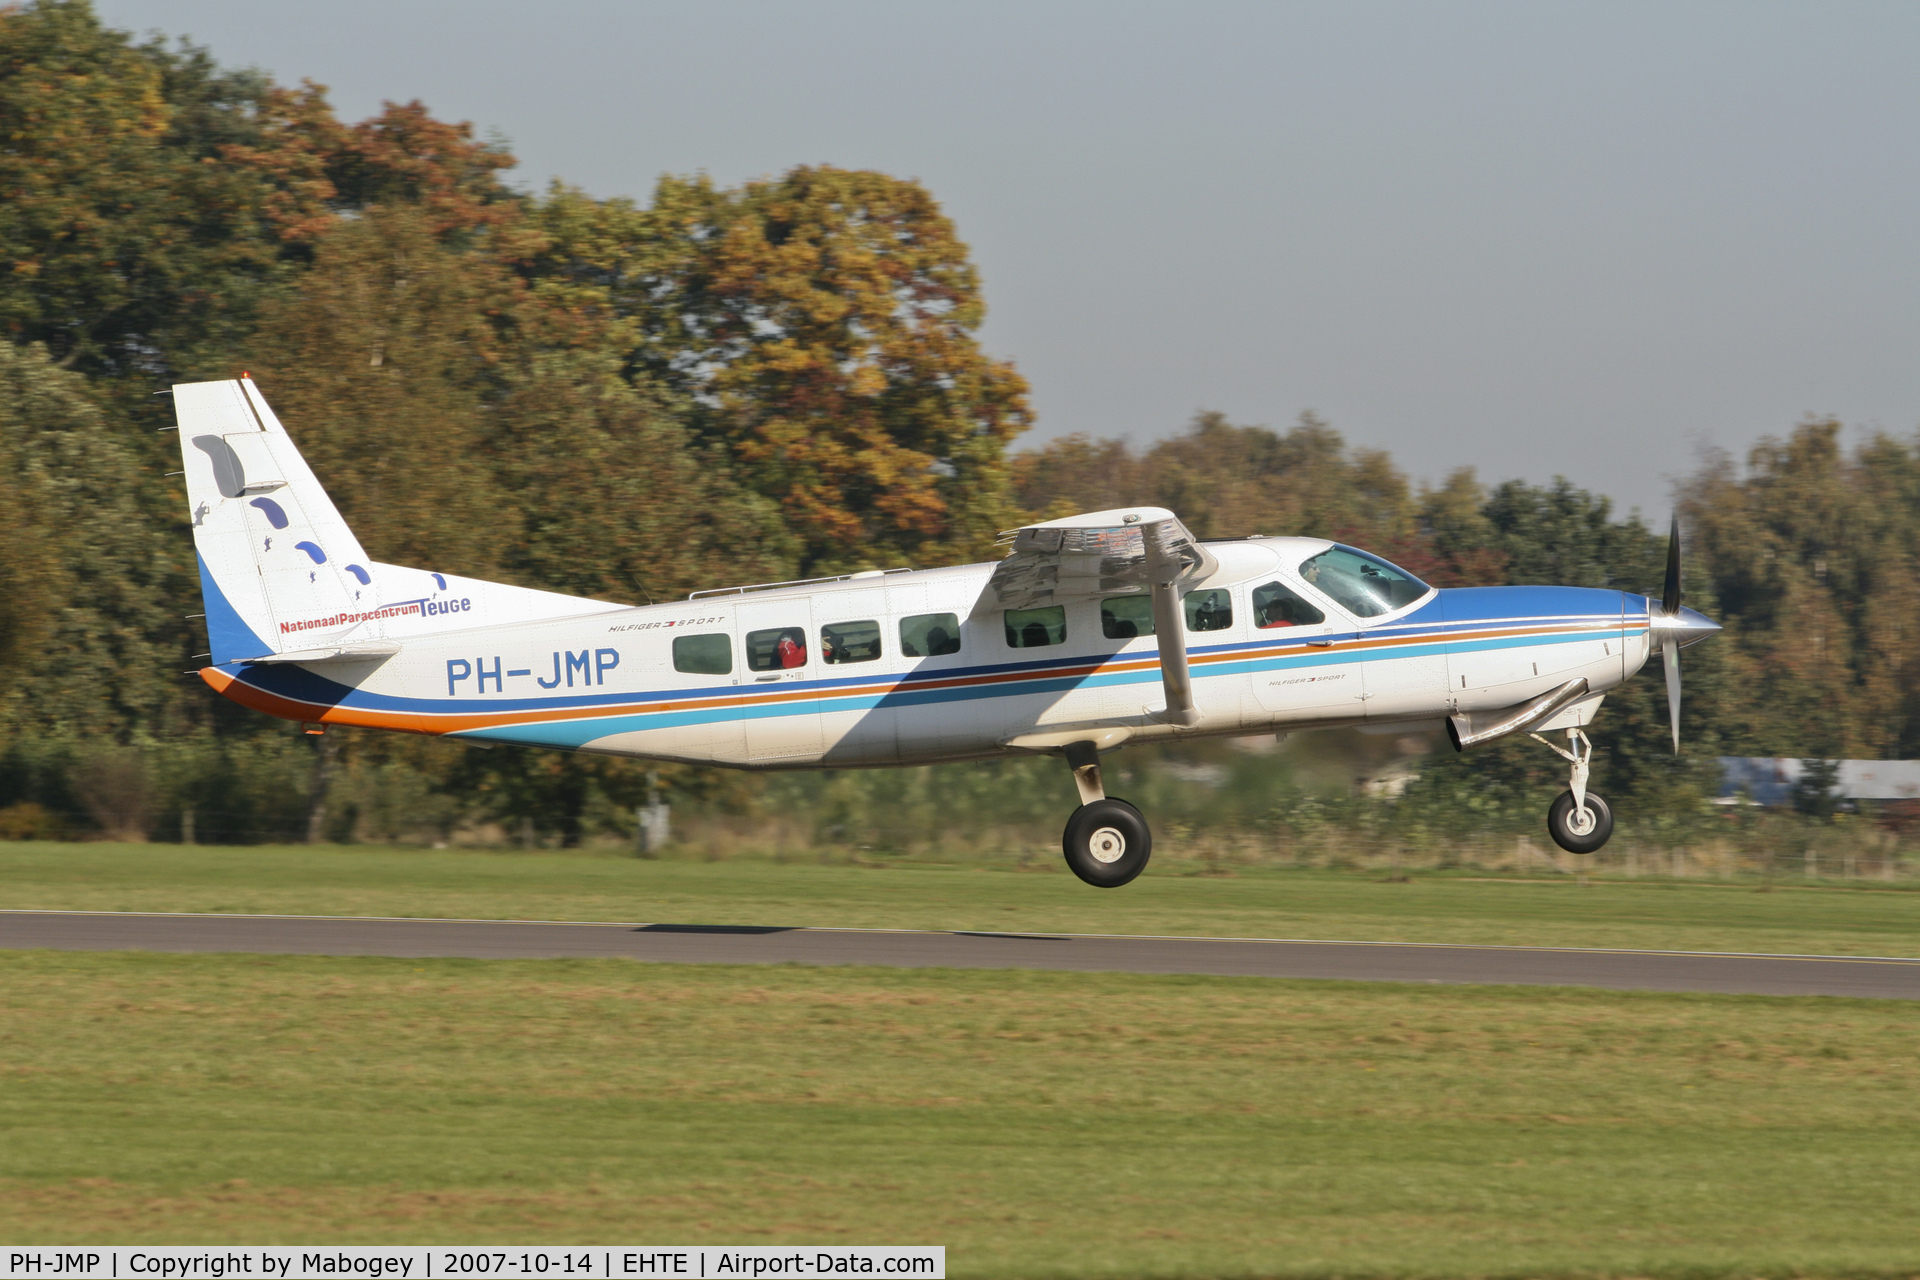 PH-JMP, 1997 Cessna 208B Supervan 900 C/N 208B-0583, Skydivers on their way up!